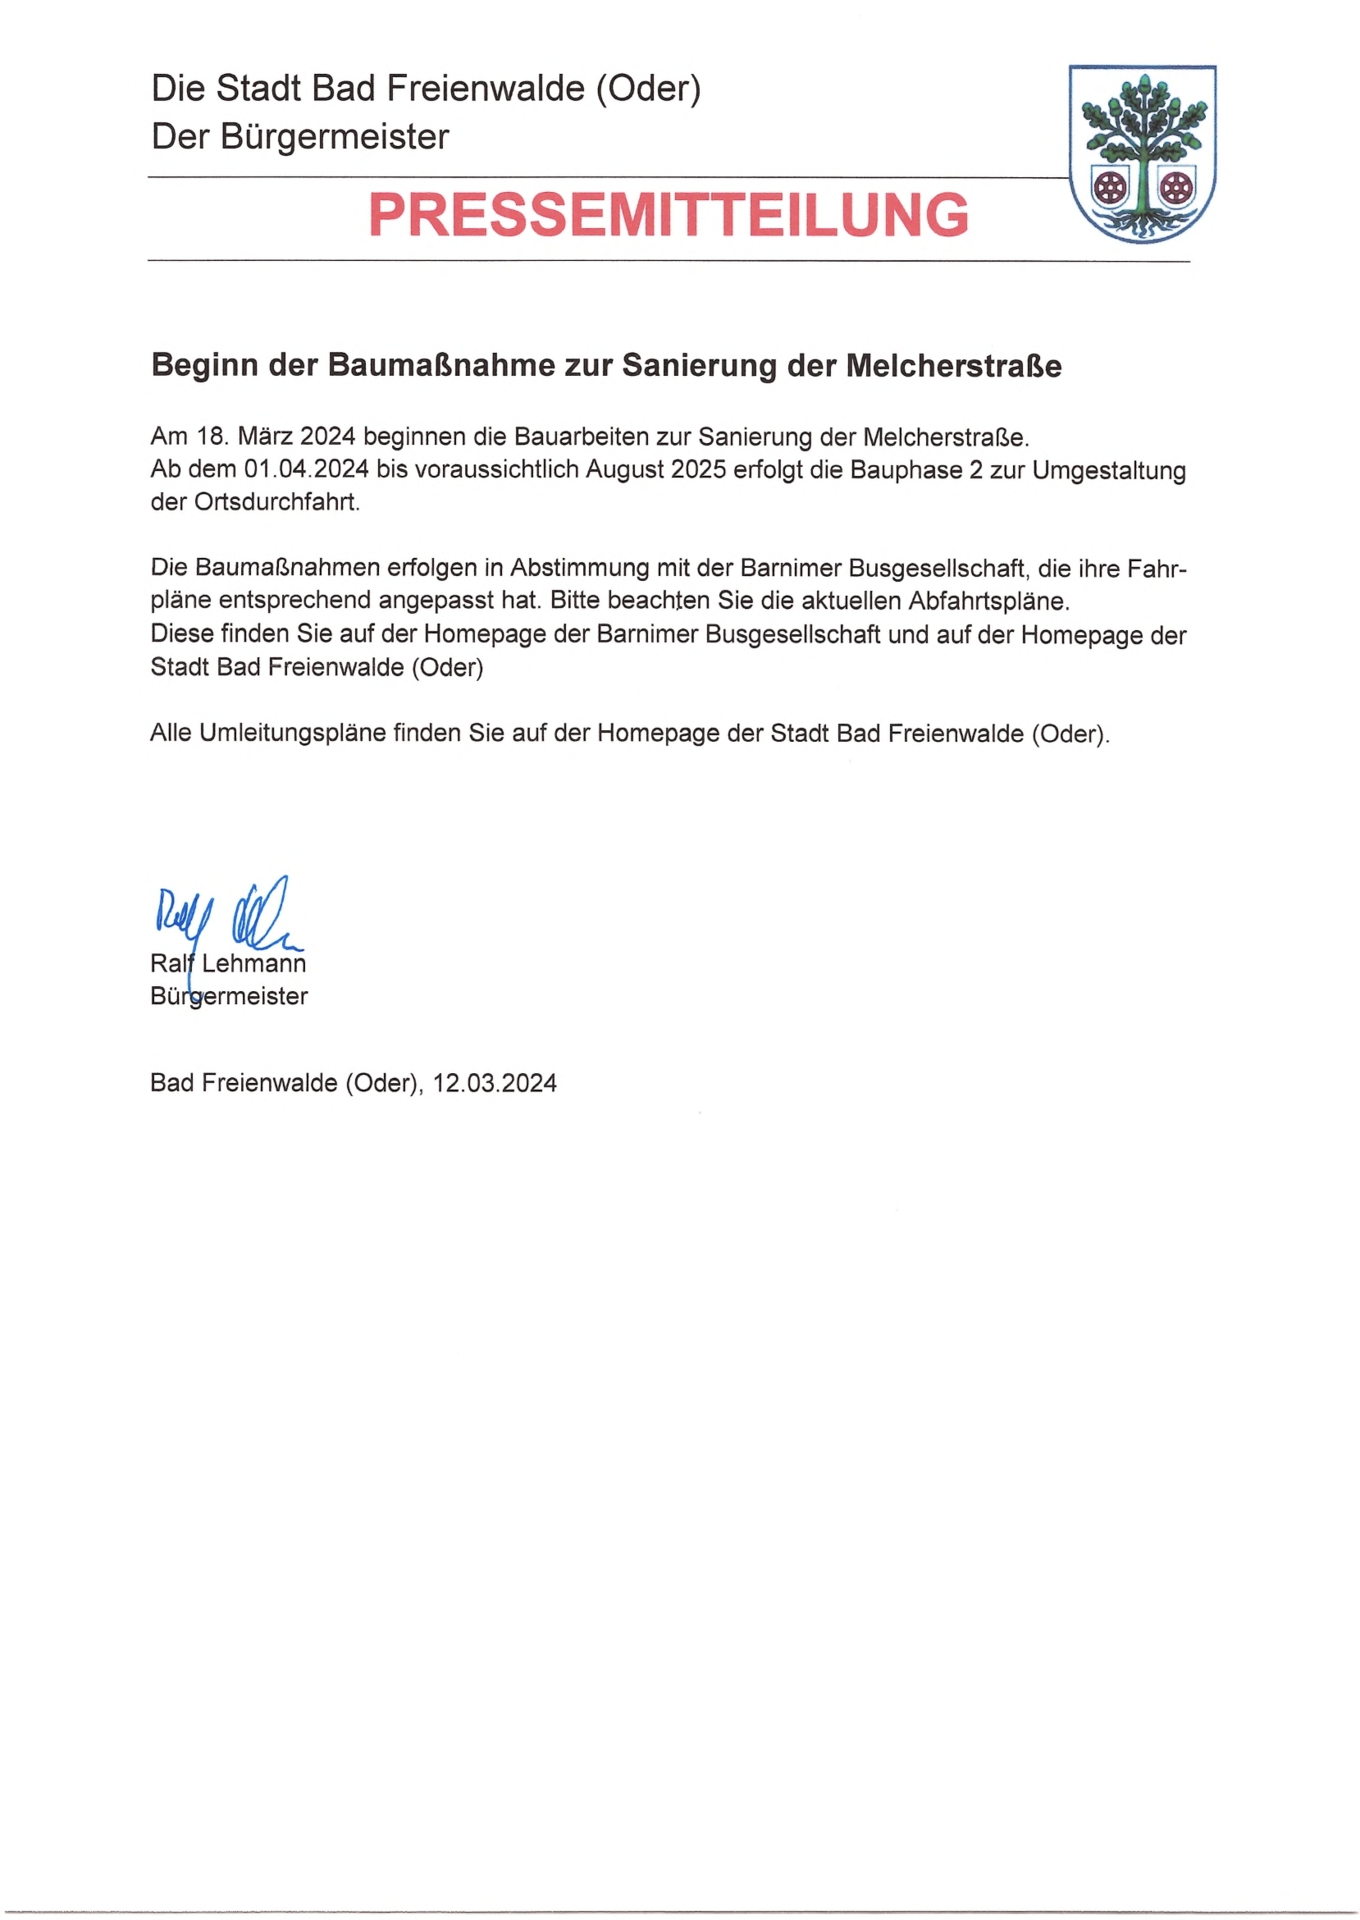 Pressemitteilung_Beginn der Baumaßnahme zur Sanierung der Melcherstraße ab 18.04.24